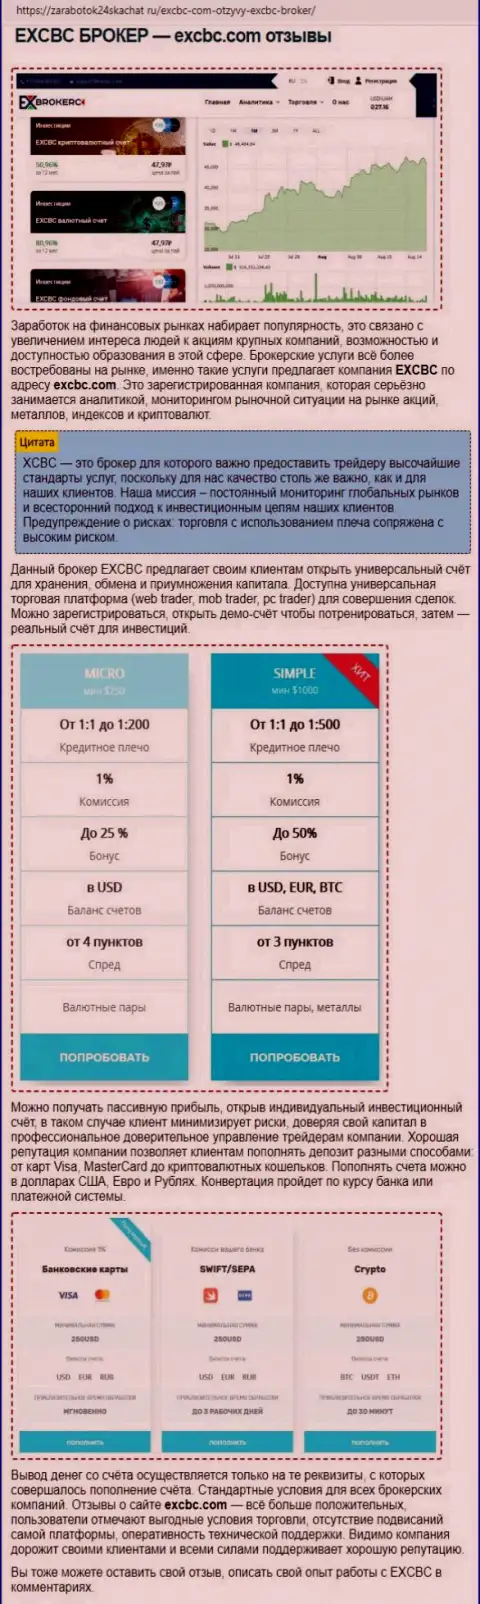 Обзорный материал об ФОРЕКС брокере EXCHANGEBC Ltd Inc на интернет-портале Zarabotok24Skachat Ru